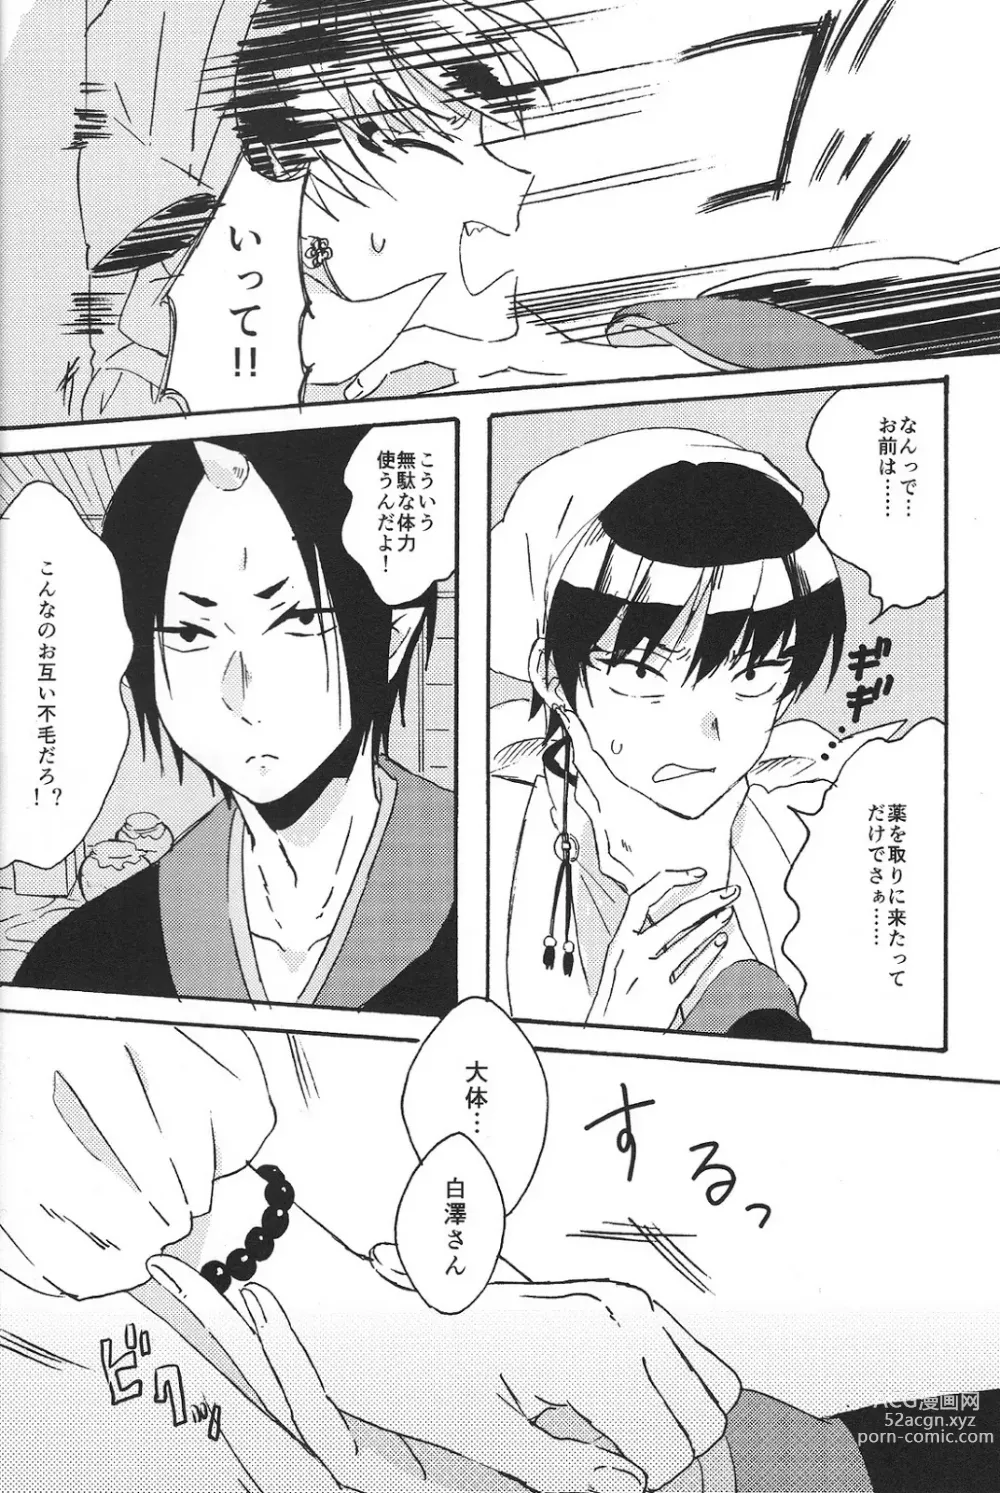 Page 7 of doujinshi Hikkakikizu